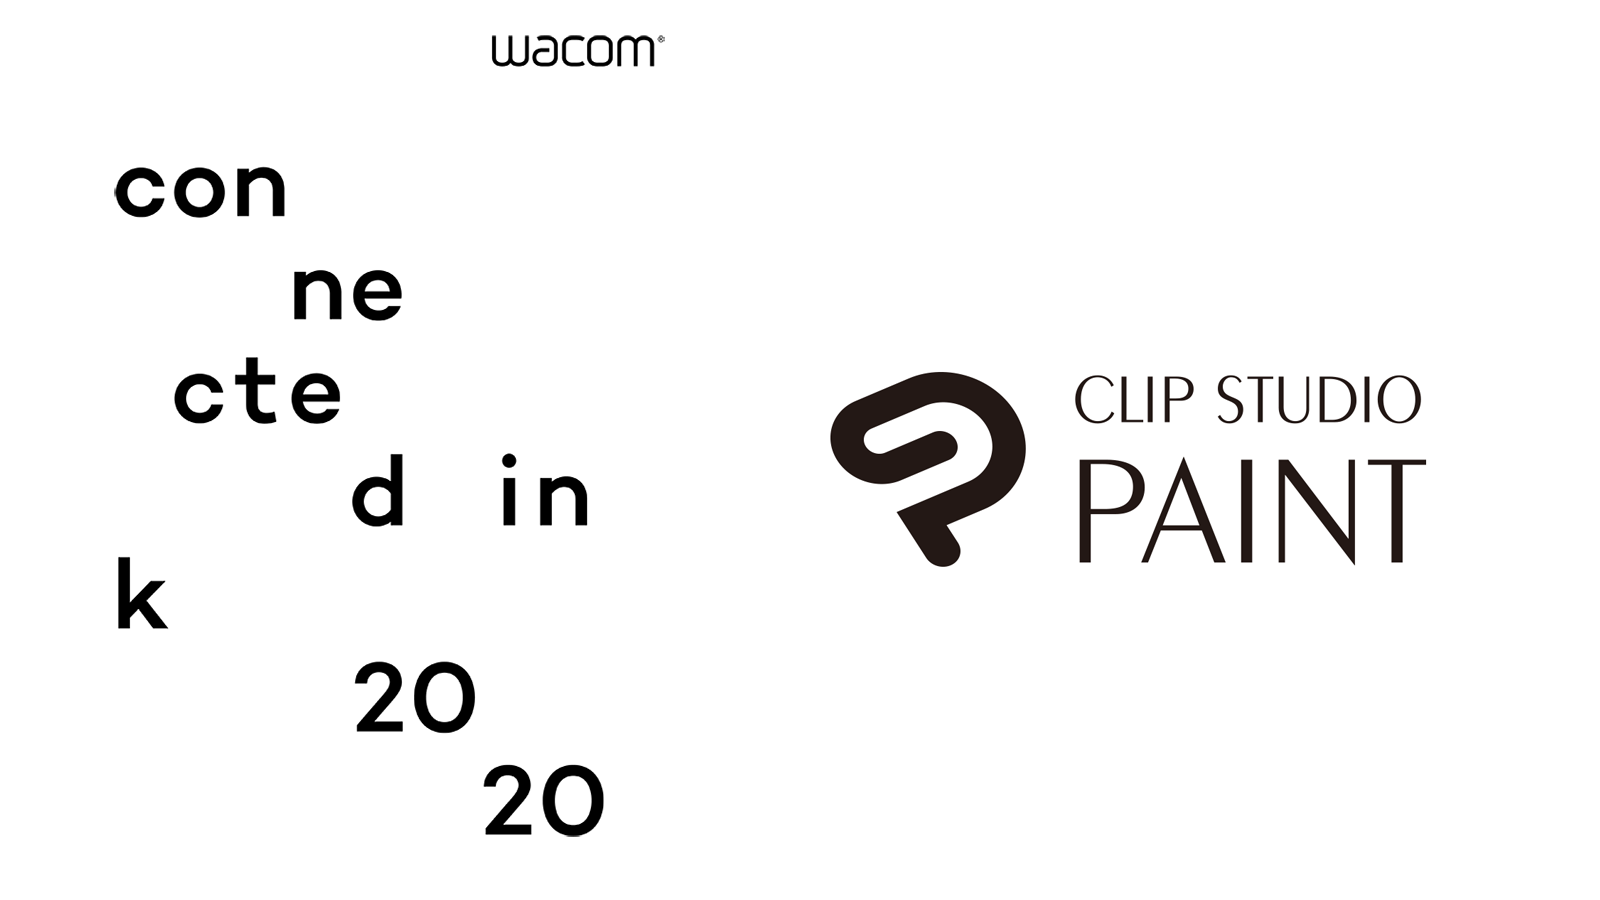 Clip Studio Paint Sponsors Wacom’s 24-Hour “Connected Ink” Online/Offline Event